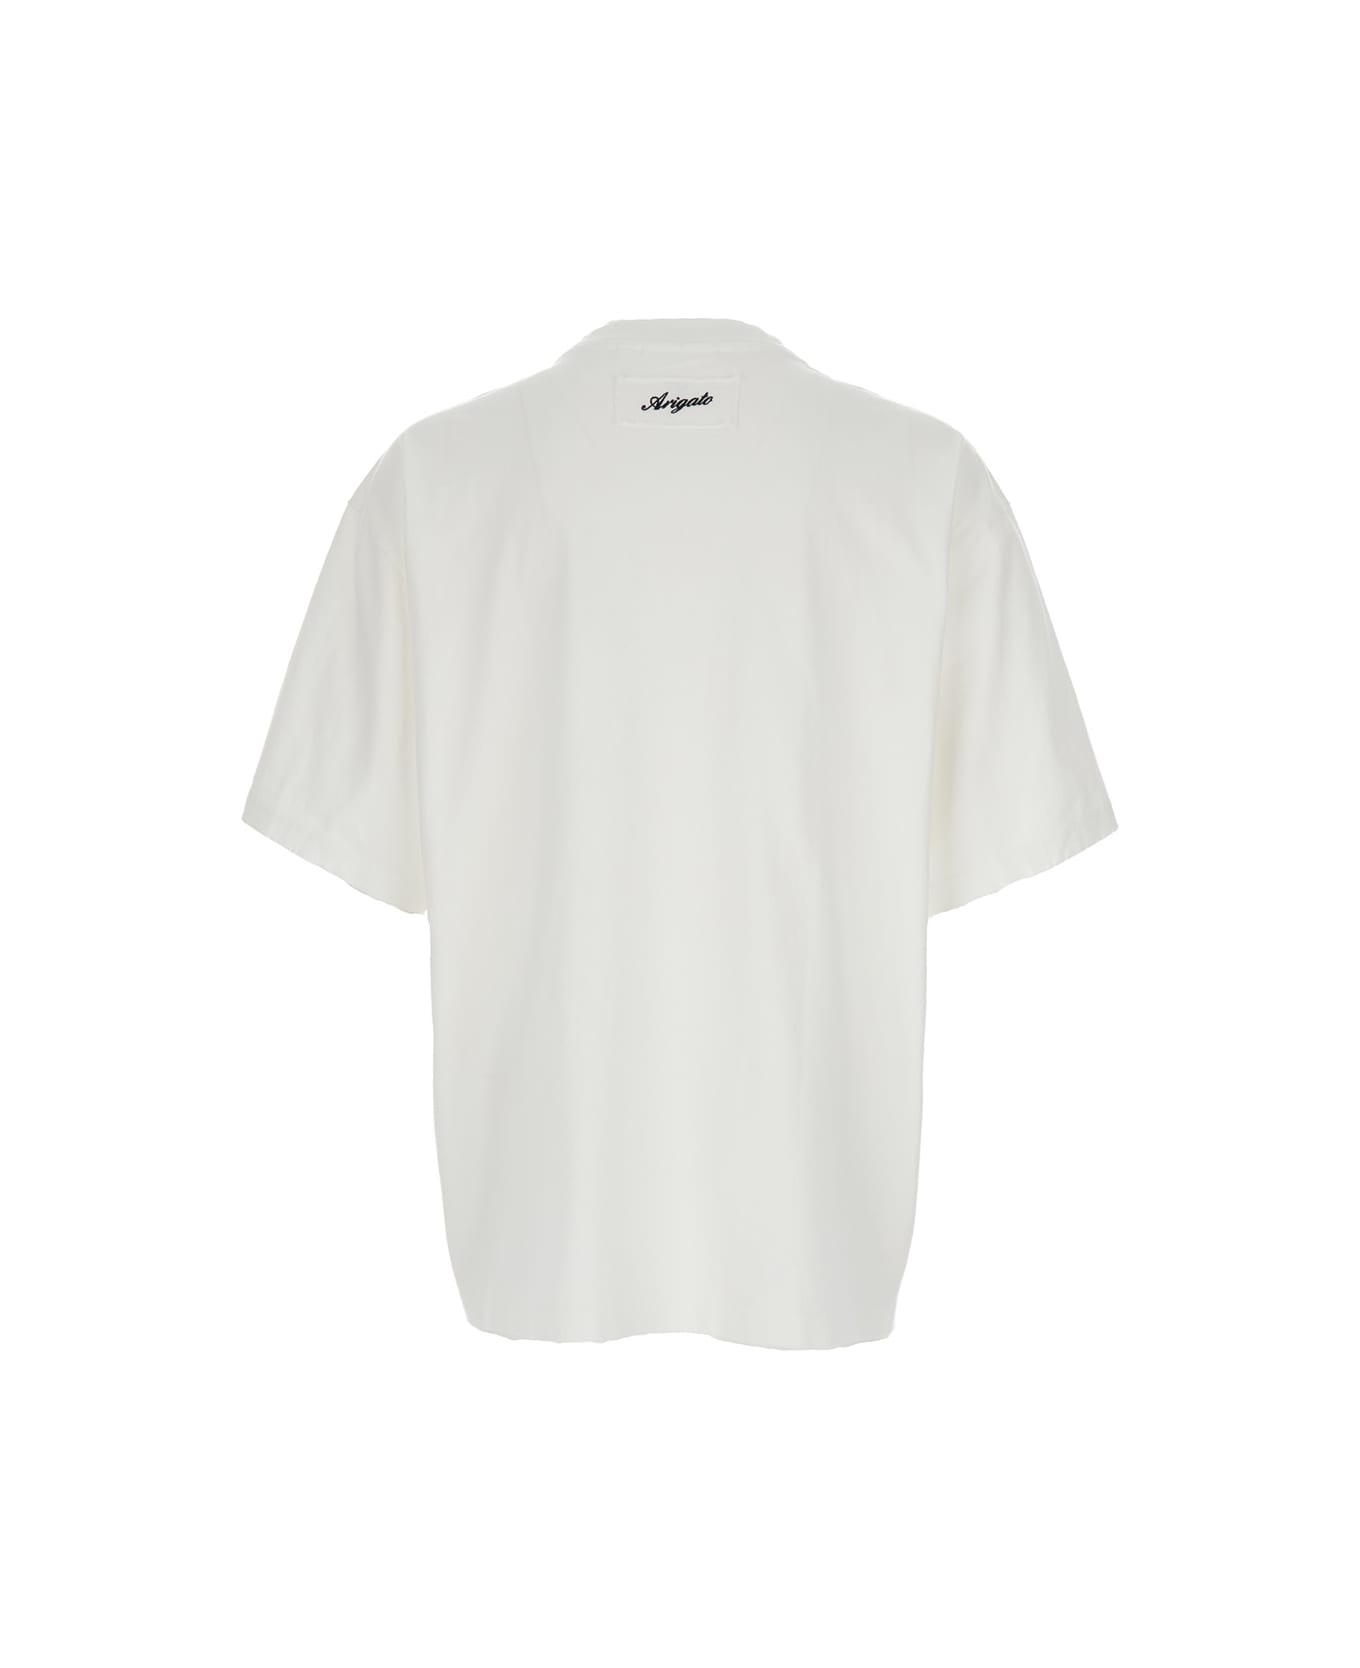 Axel Arigato White Crew Neck T-shirt In Cotton Man - White